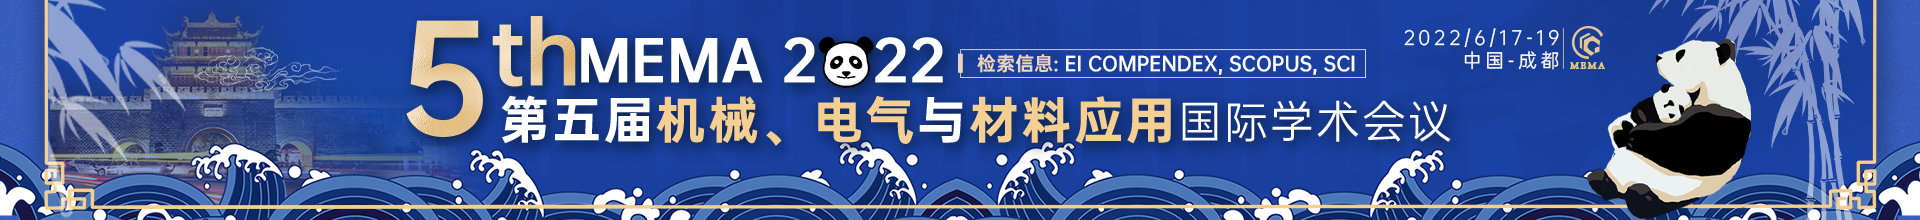 6月成都-MEMA2022会议云banner-何雪仪-20220309.png